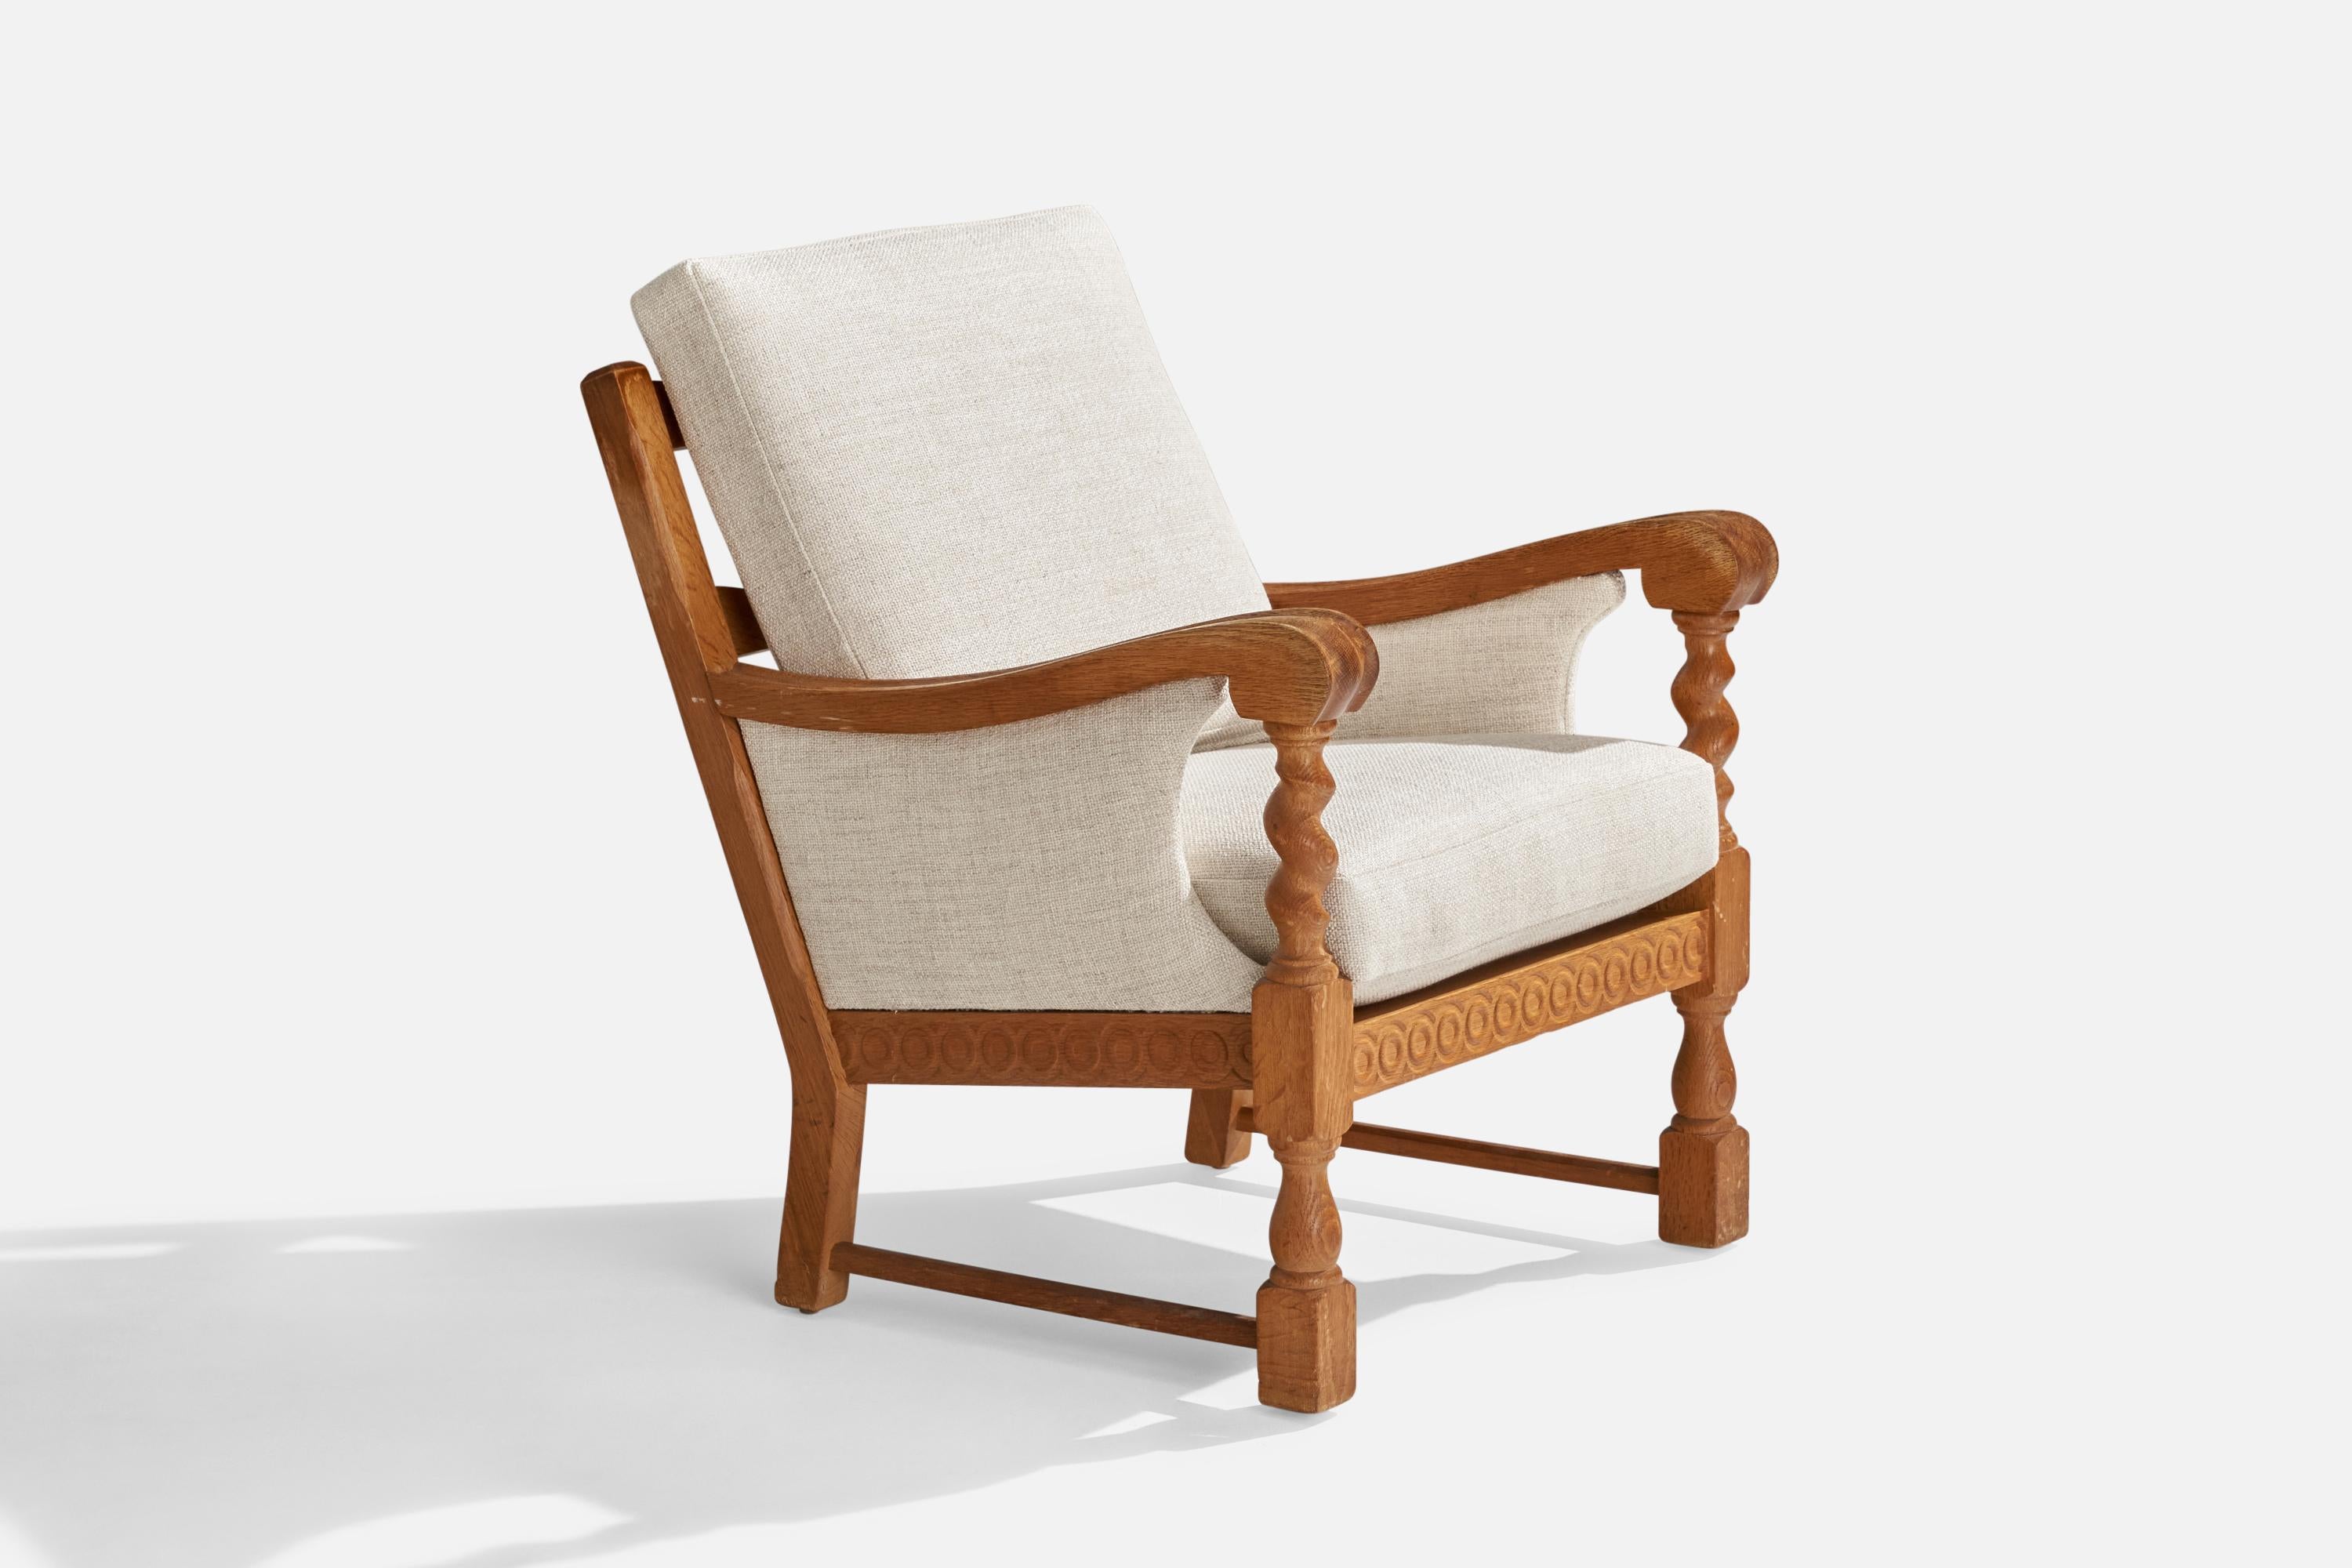 Ein Loungesessel aus Eiche und weißem Stoff, entworfen und hergestellt in Dänemark, 1960er Jahre.

Sitzhöhe: 17.25